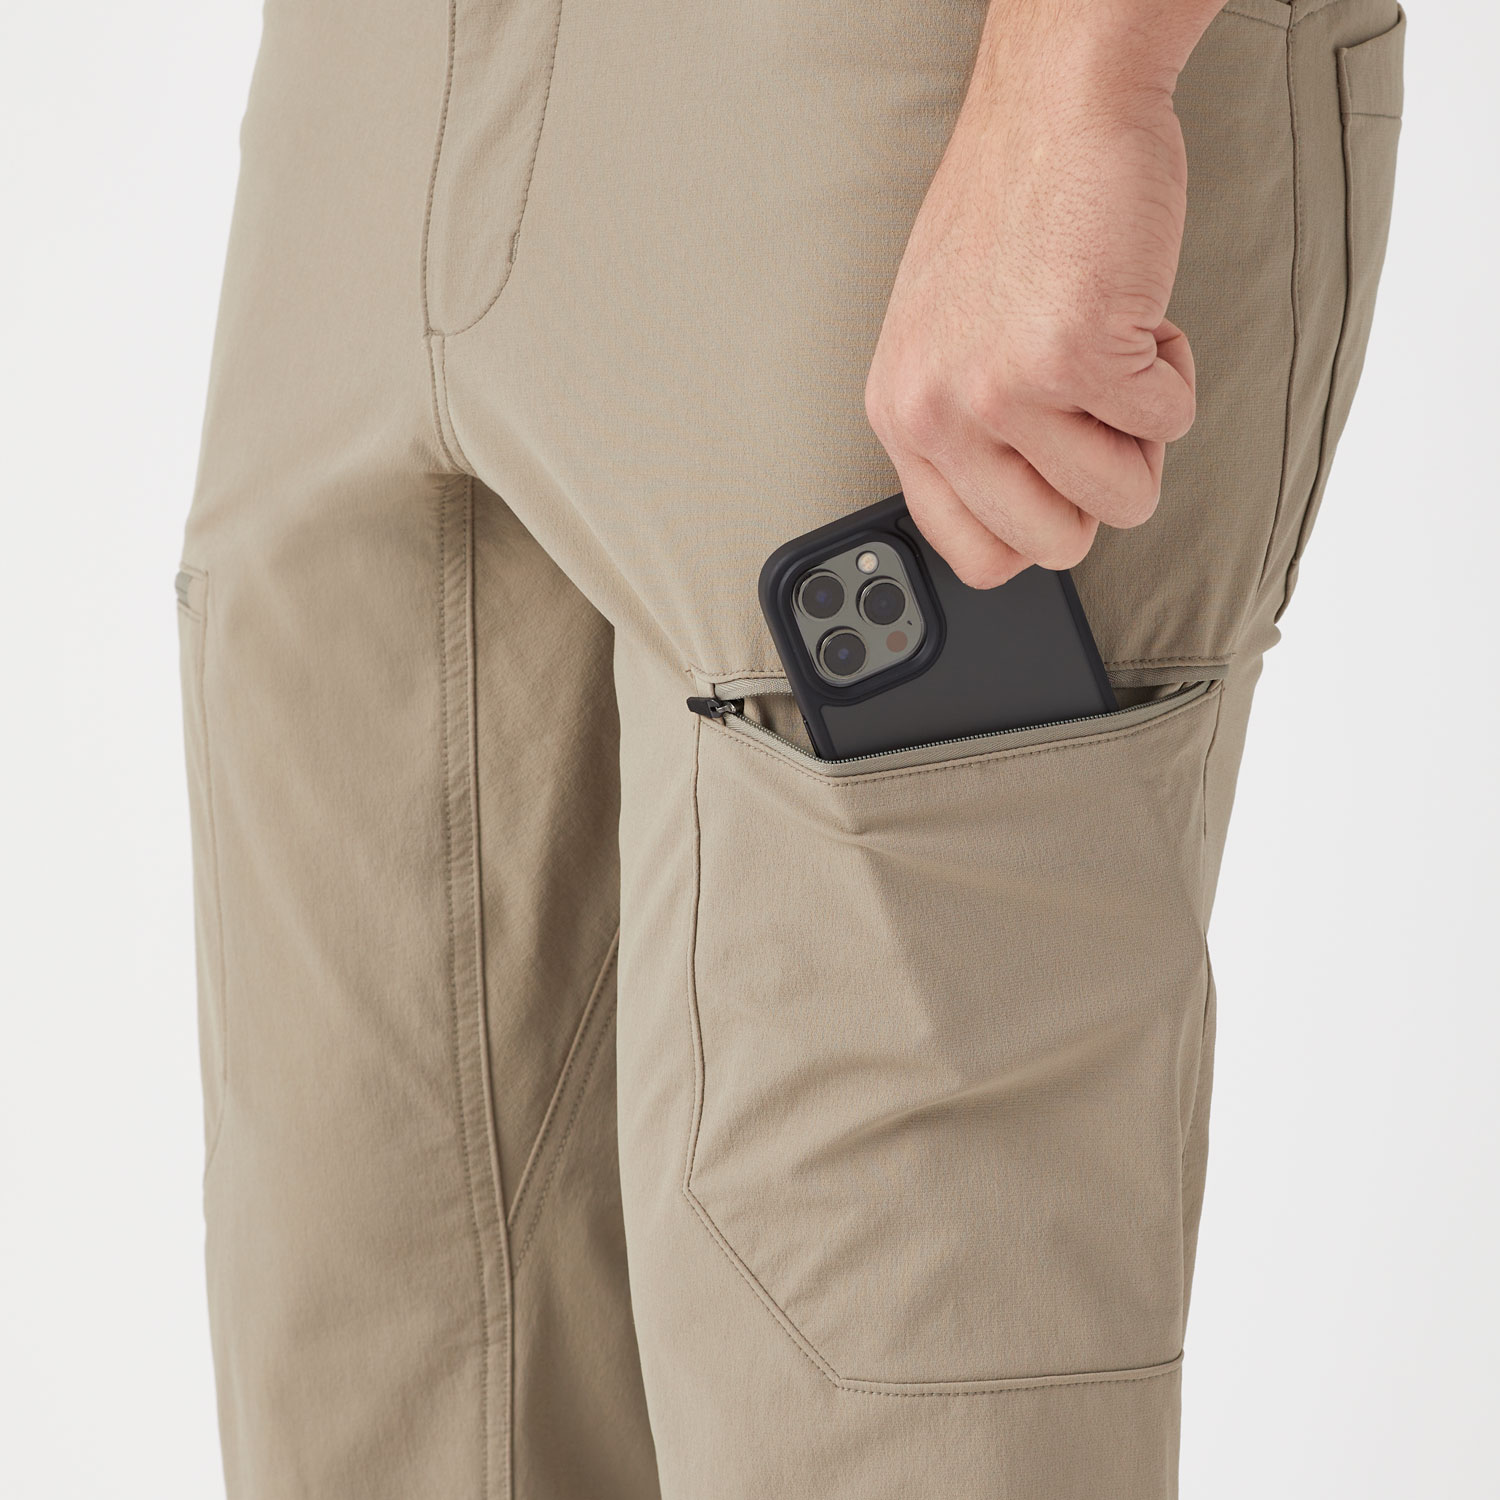 Men's Slim Fit Flexpedition Cargo Pants